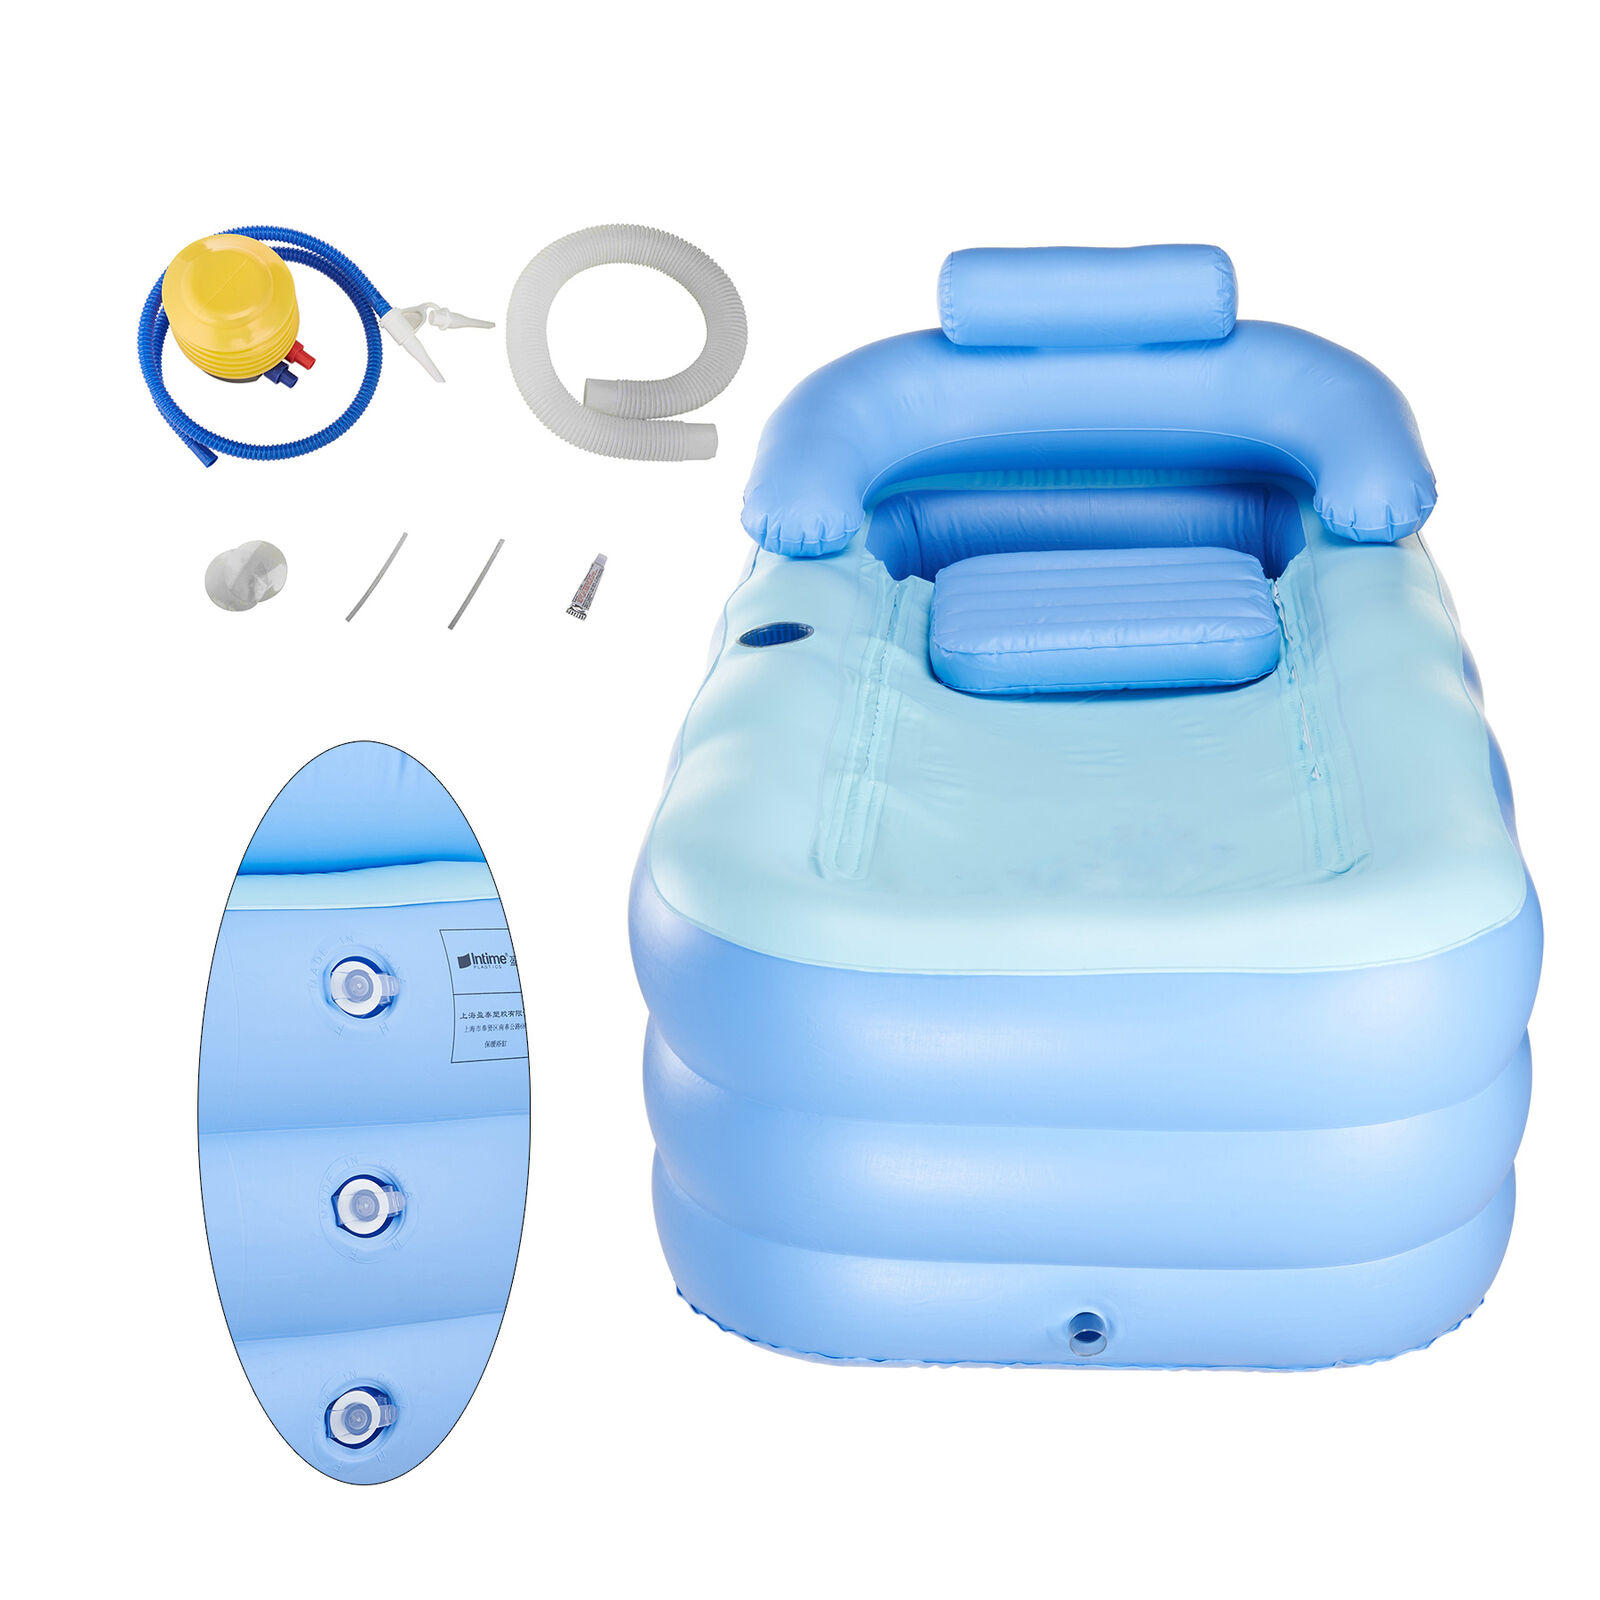 

160x84x64cm Outdoor Portable Folding Bathtub Adult Child Bath Tub PVC Warm Spa Inflatable Bathtub Set